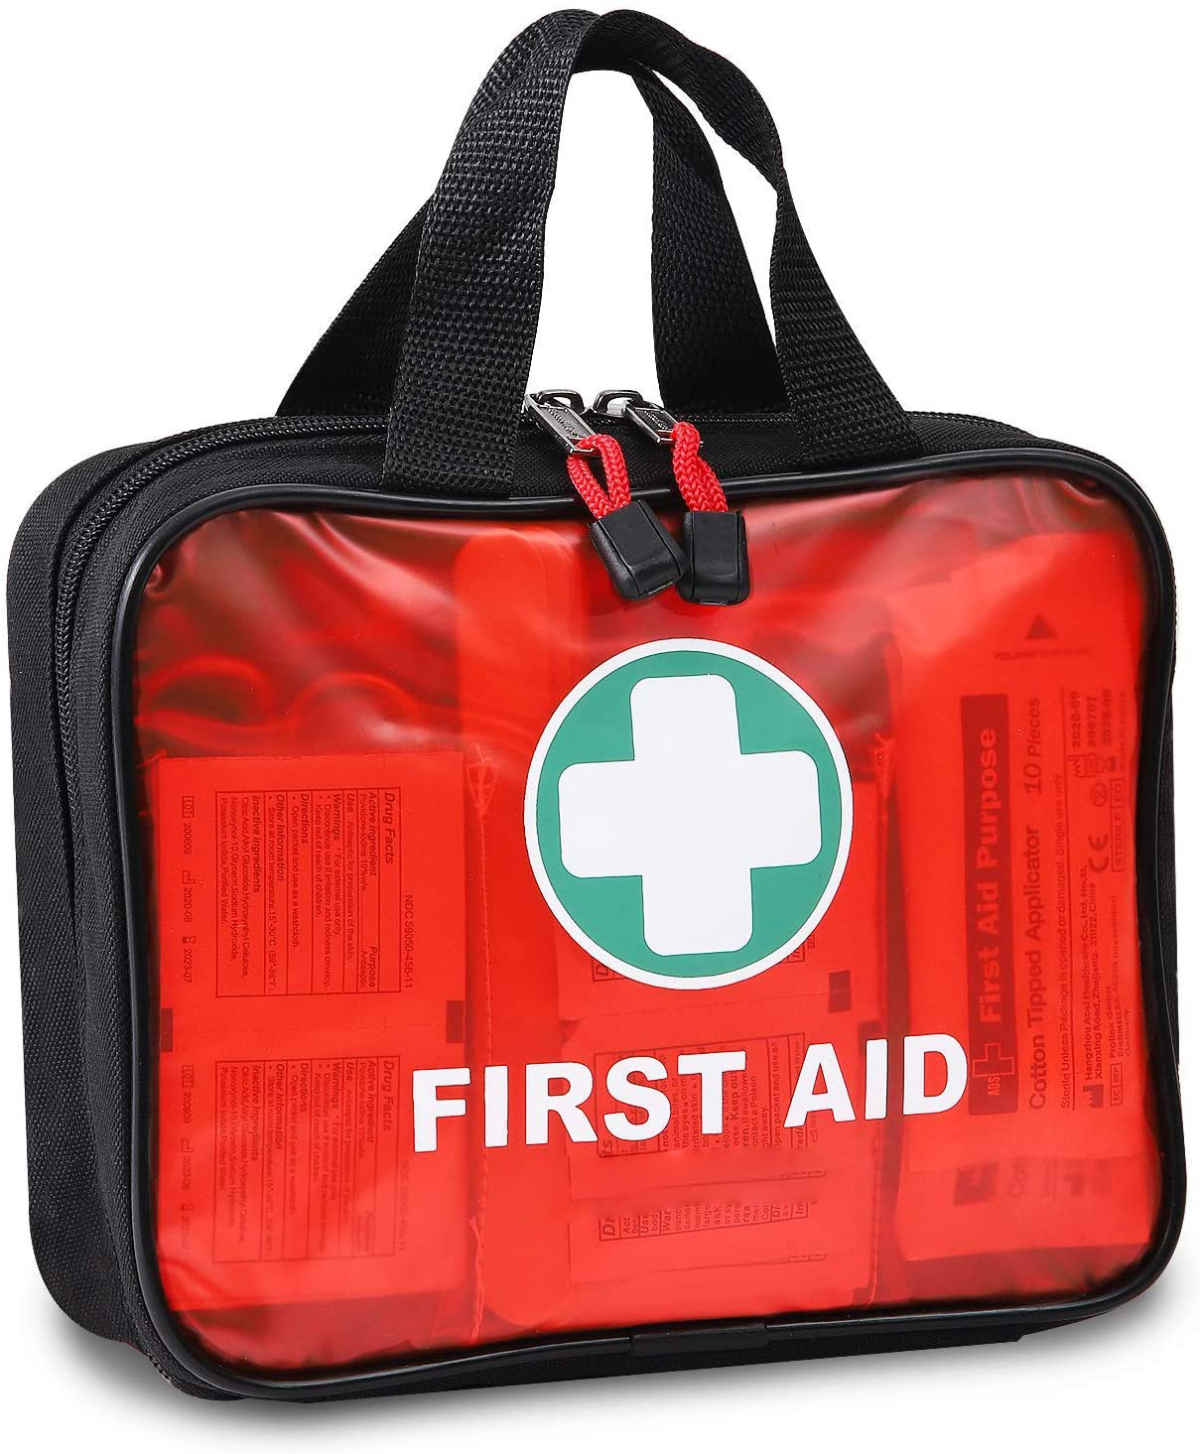 Červená kabelka prvej pomoci s 200 kusmi nemocničného zdravotníckeho materiálu